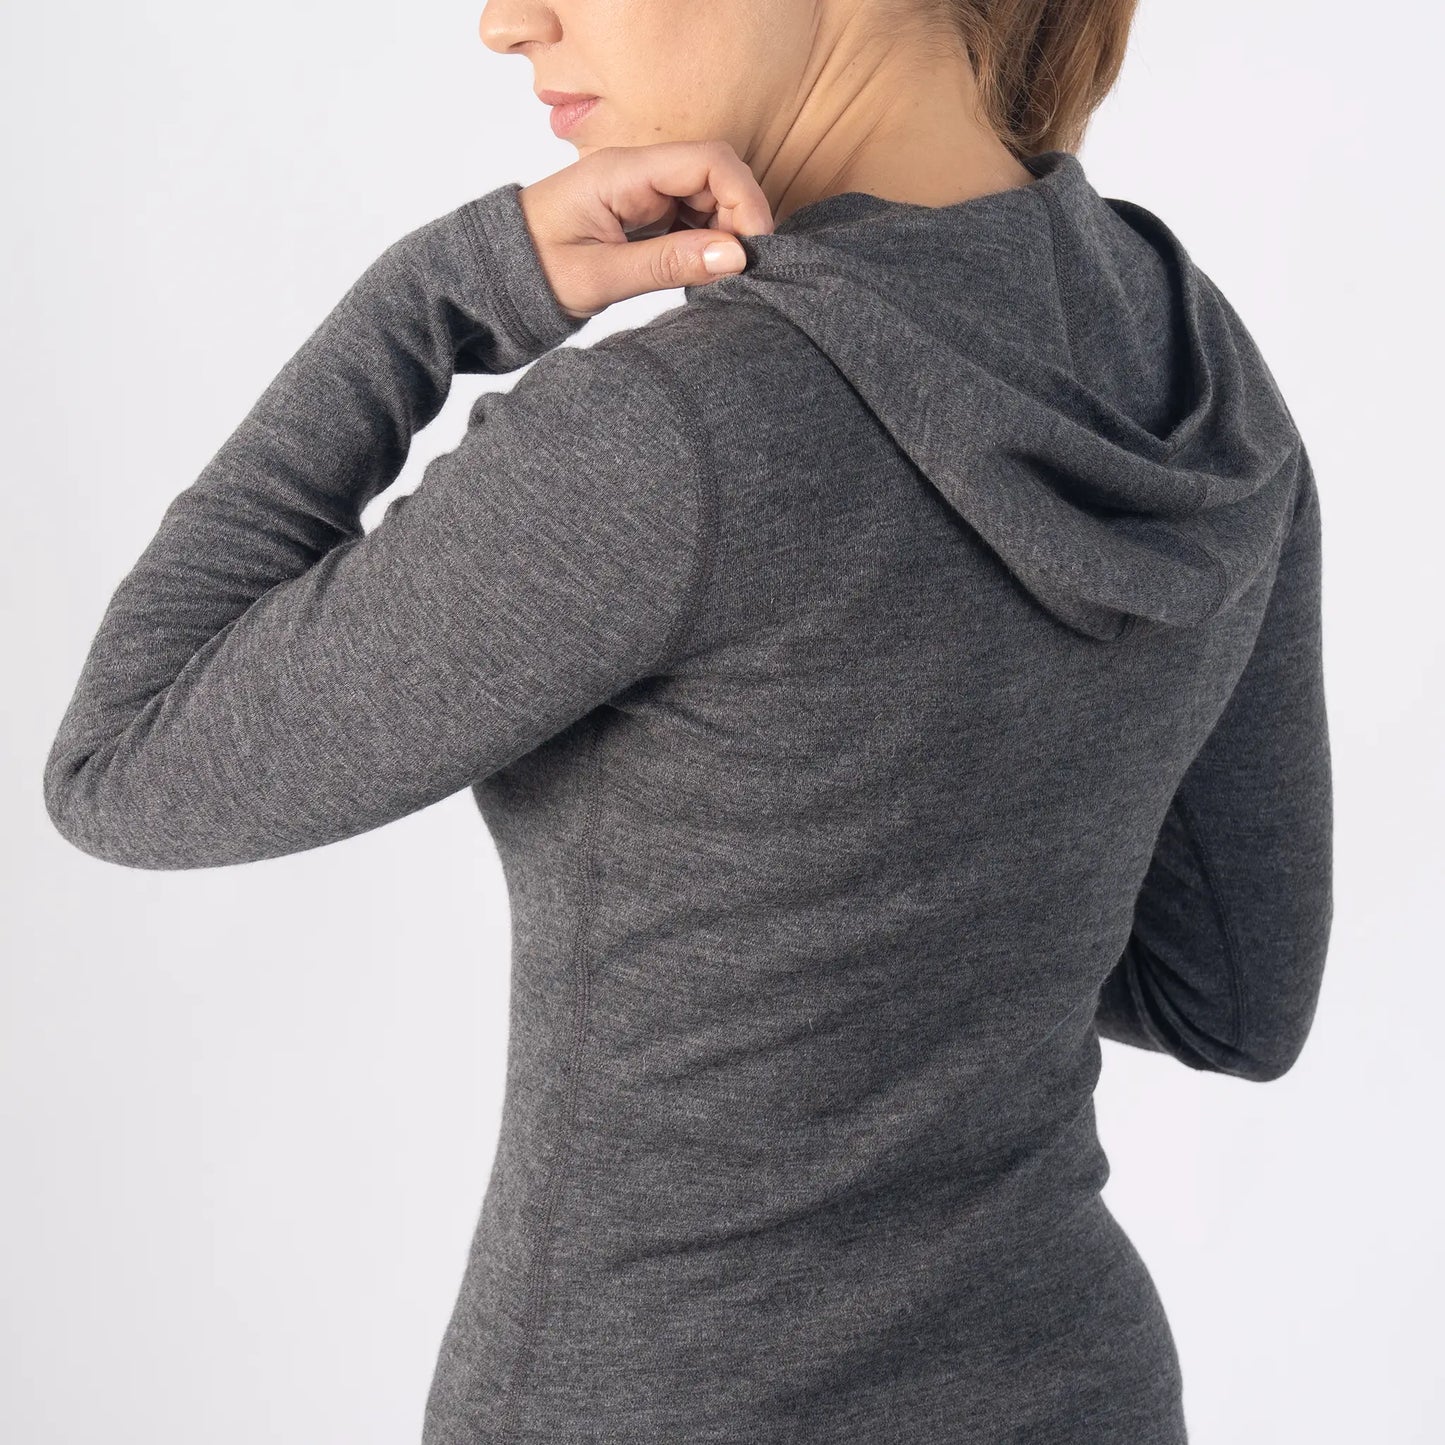 Женский пуловер с капюшоном из шерсти альпаки: 300, легкий вес